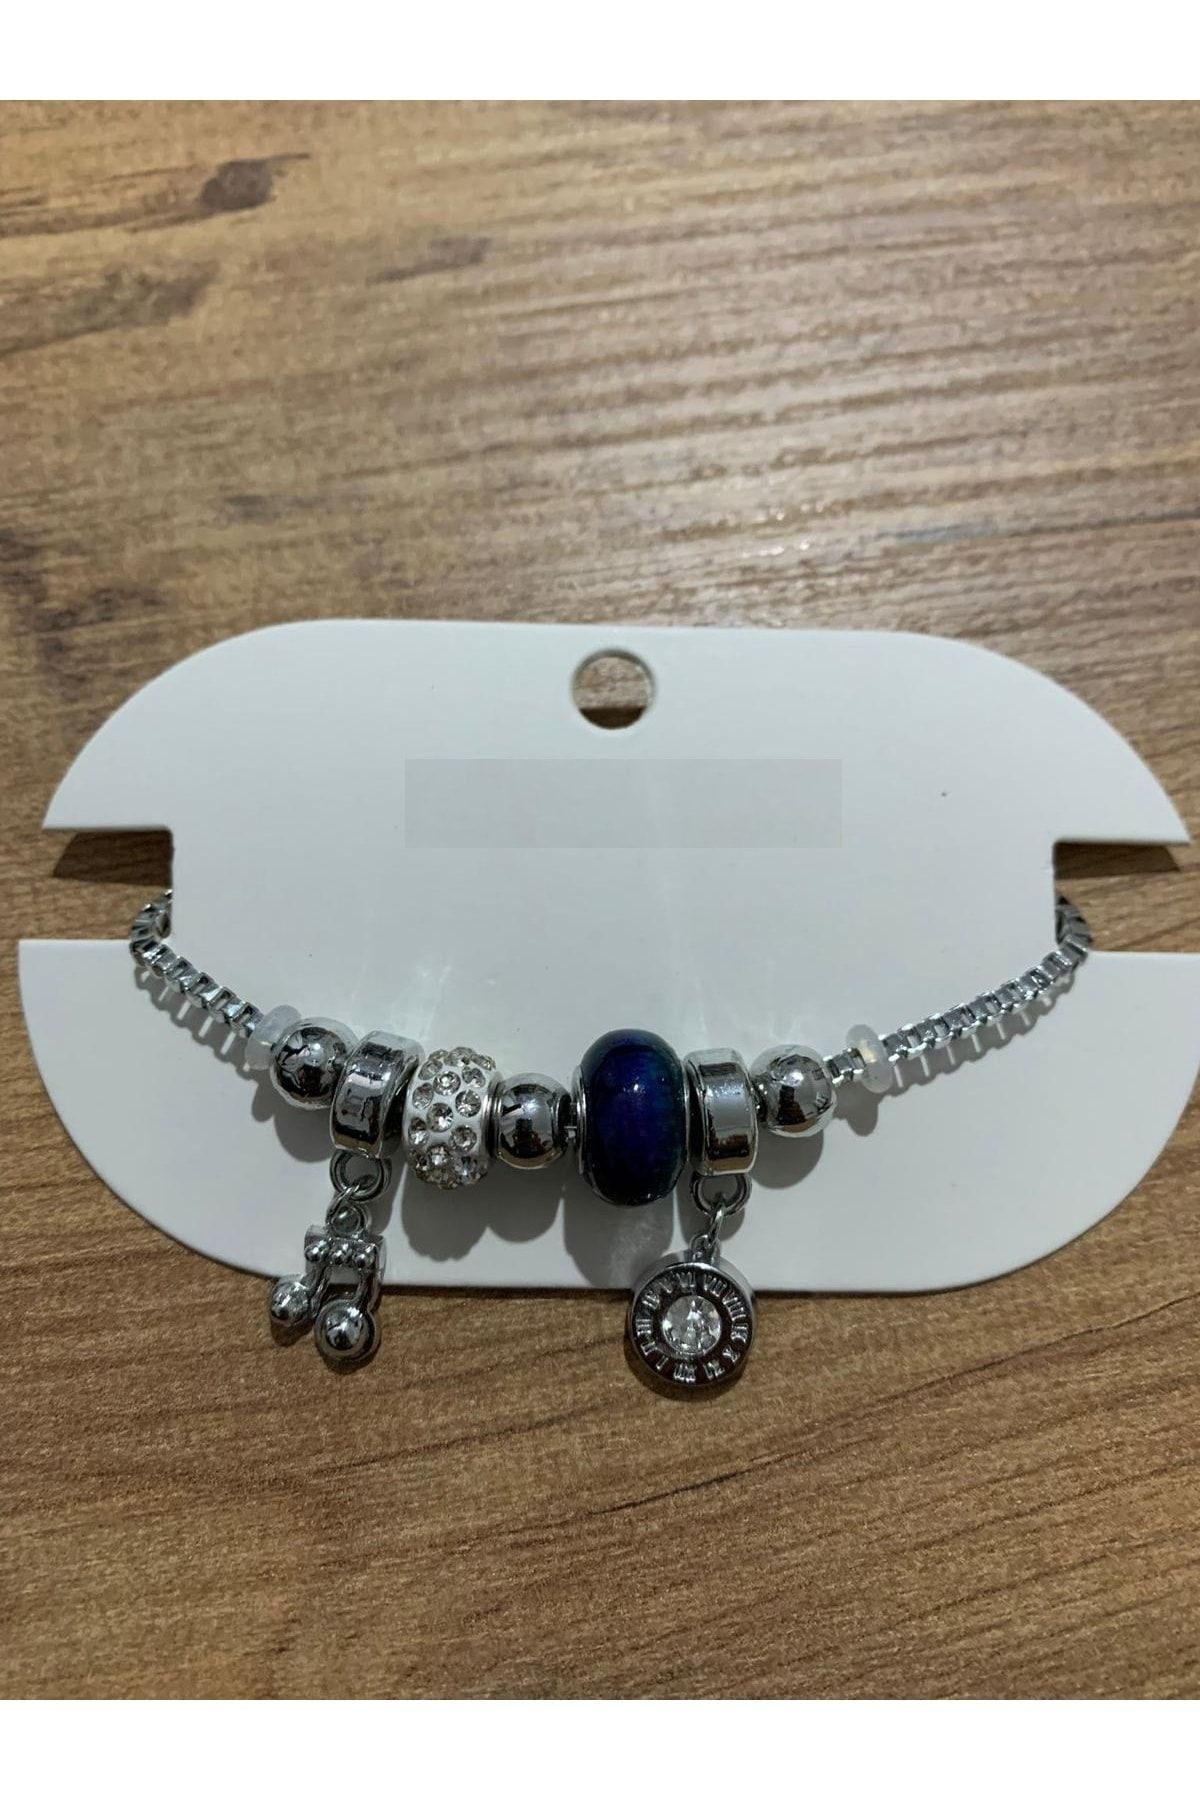 İYİ MODA Jewellery Charm Bileklik Modelleri